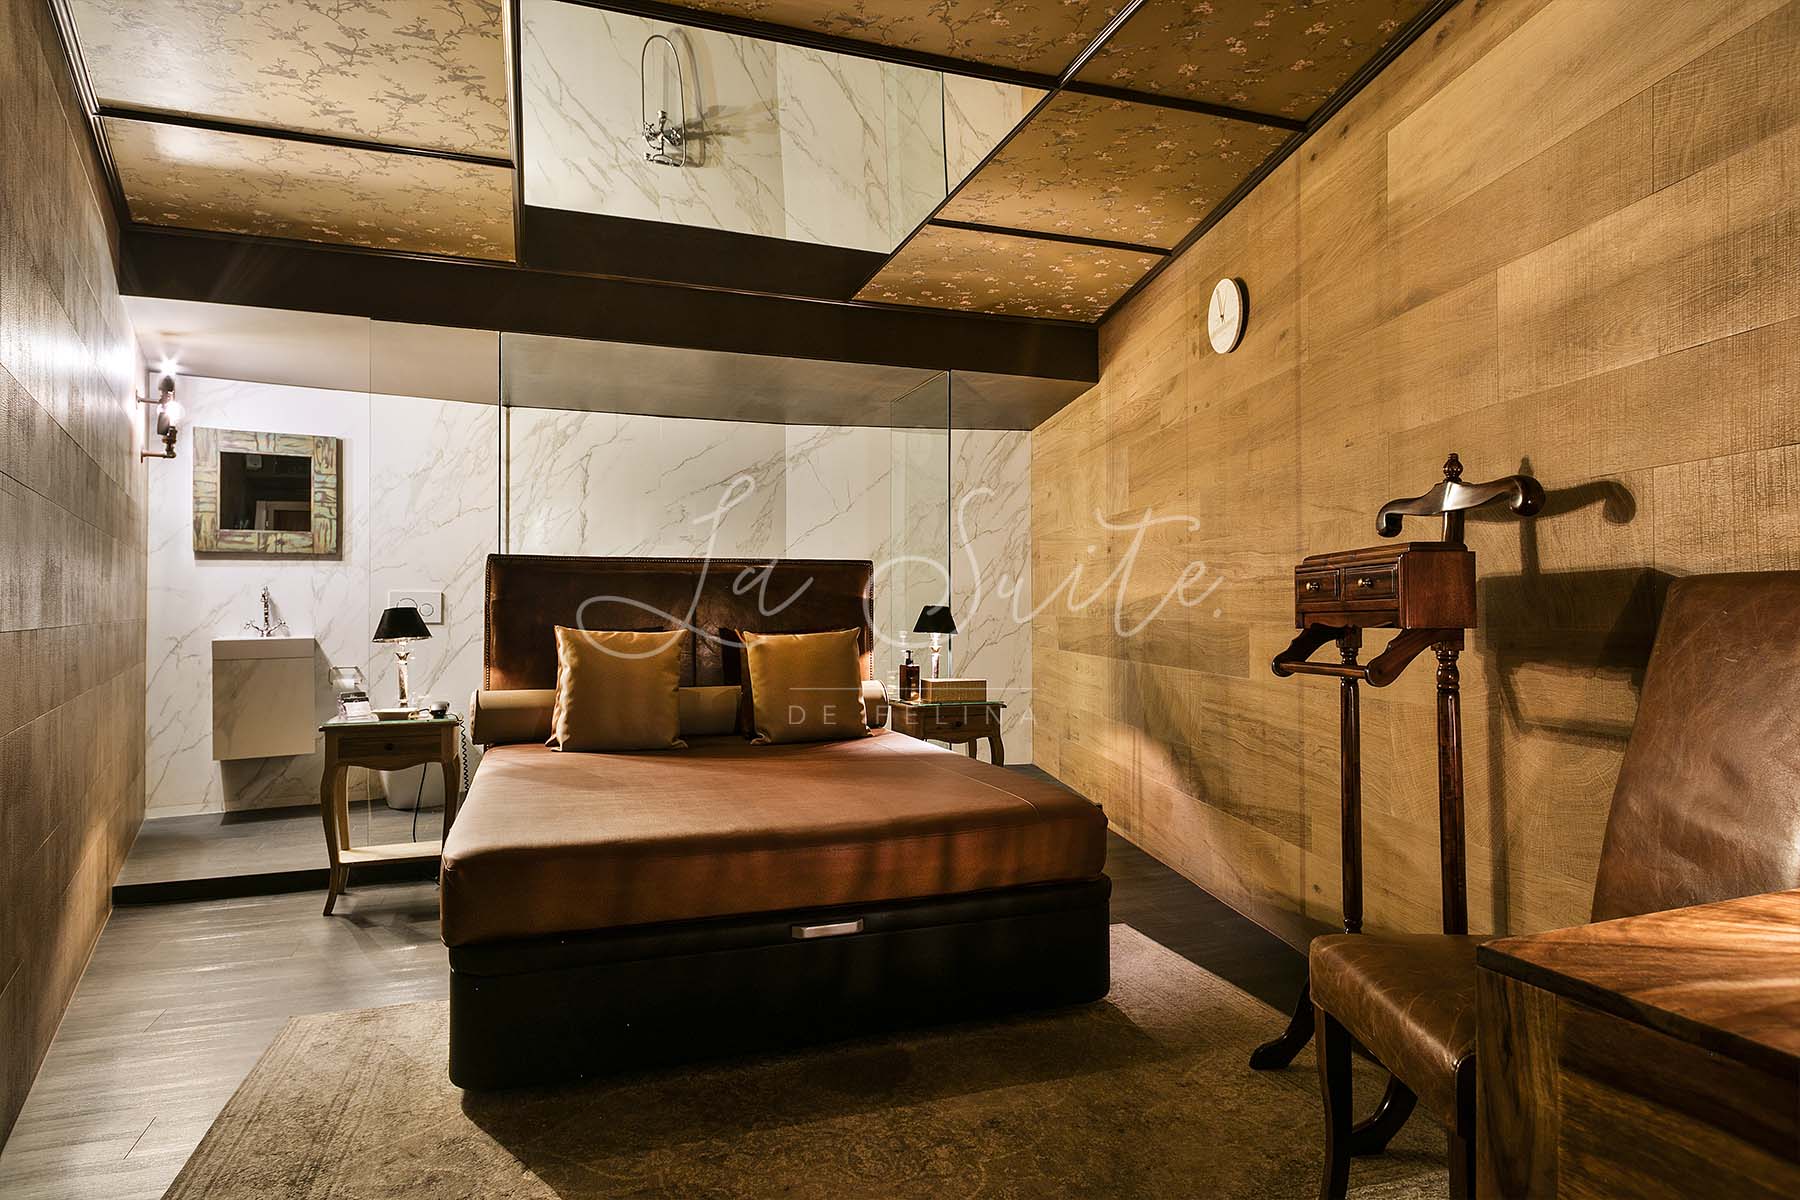 Camera dell'erotismo, pareti rifinite in legno, con arredi marroni a La Suite, Barcellona